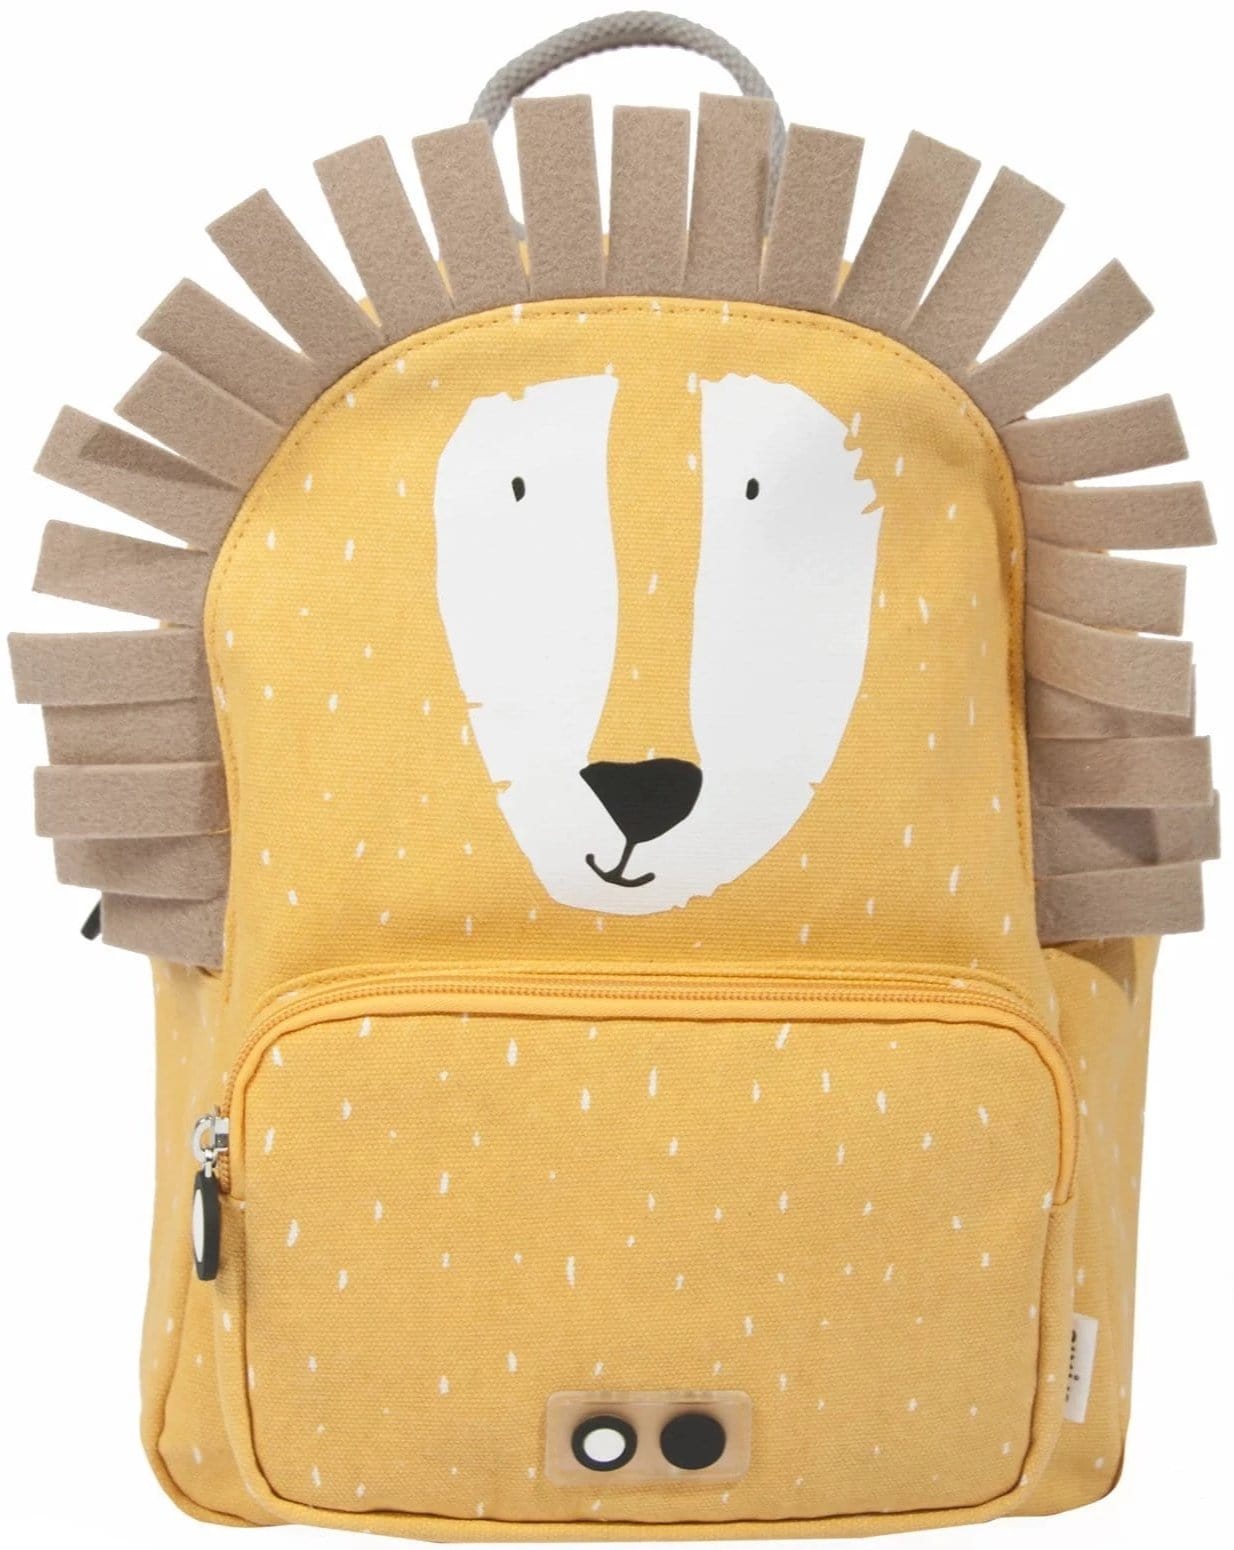 Backpack Mr. Lion